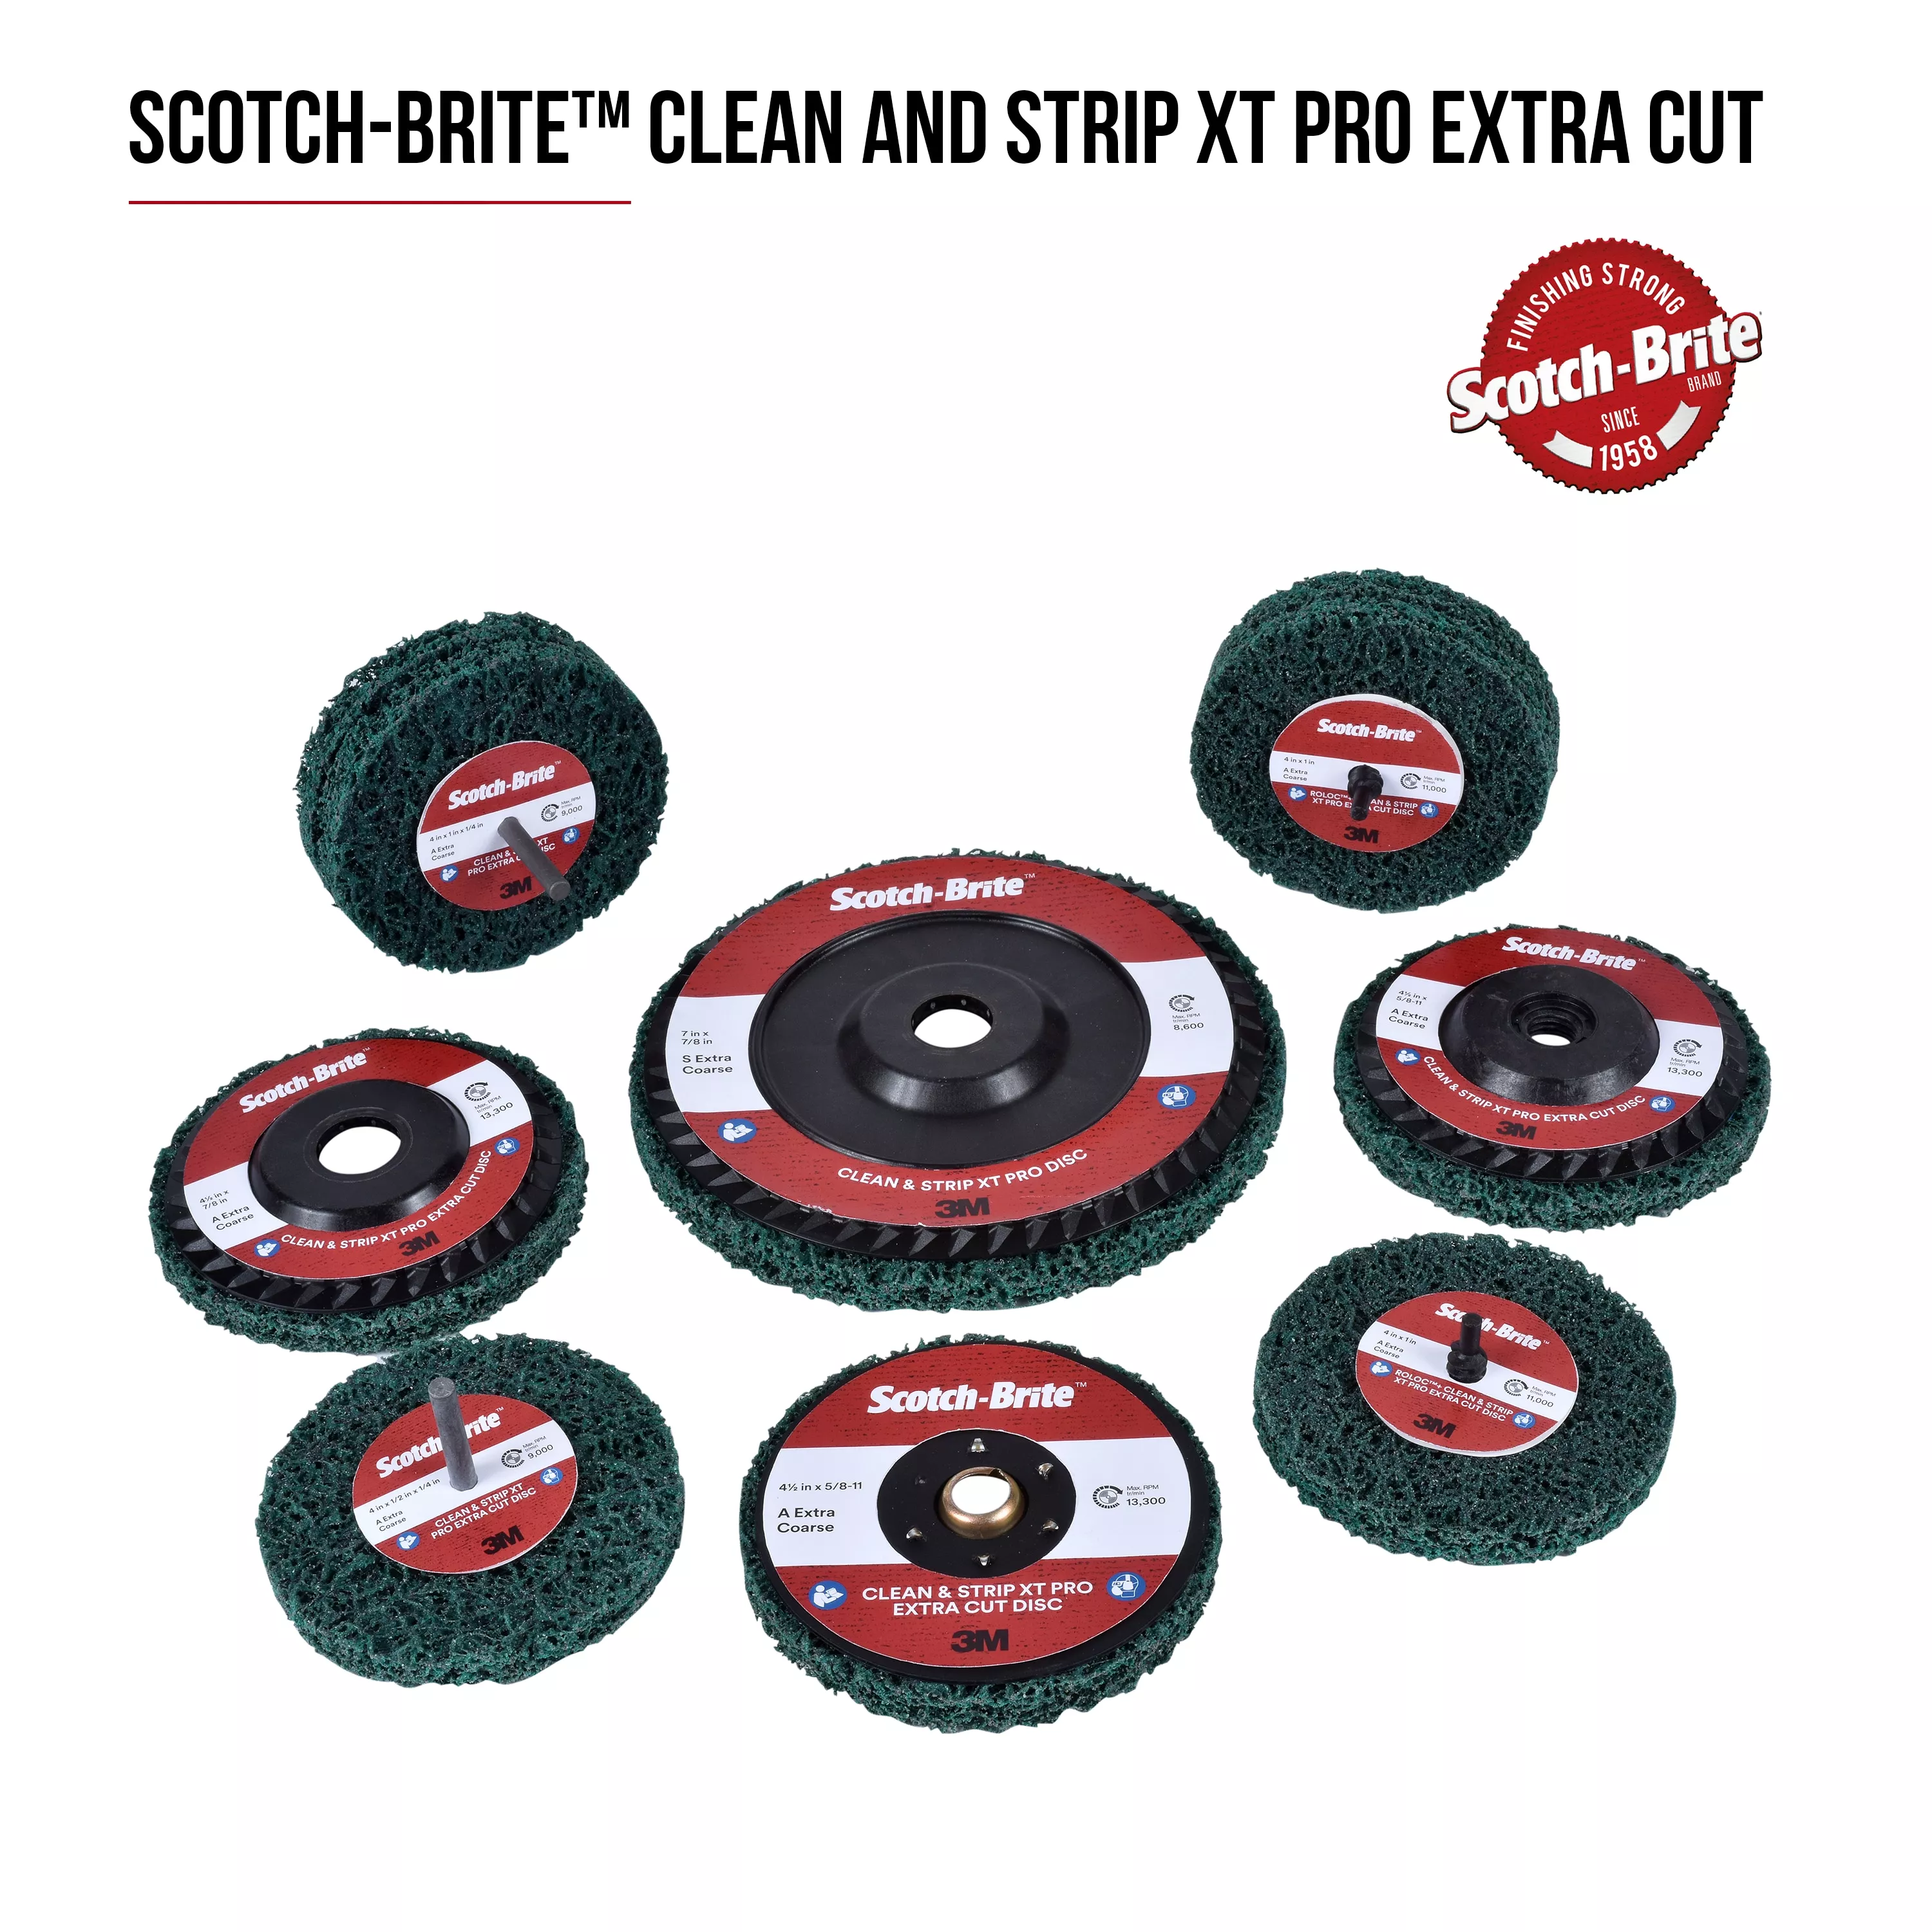 Scotch-Brite™ Clean and Strip XT Pro Extra Cut Disc, XC-DC, A/O Extra
Coarse, Green, 3 in x 1/2 in, 50 ea/Case